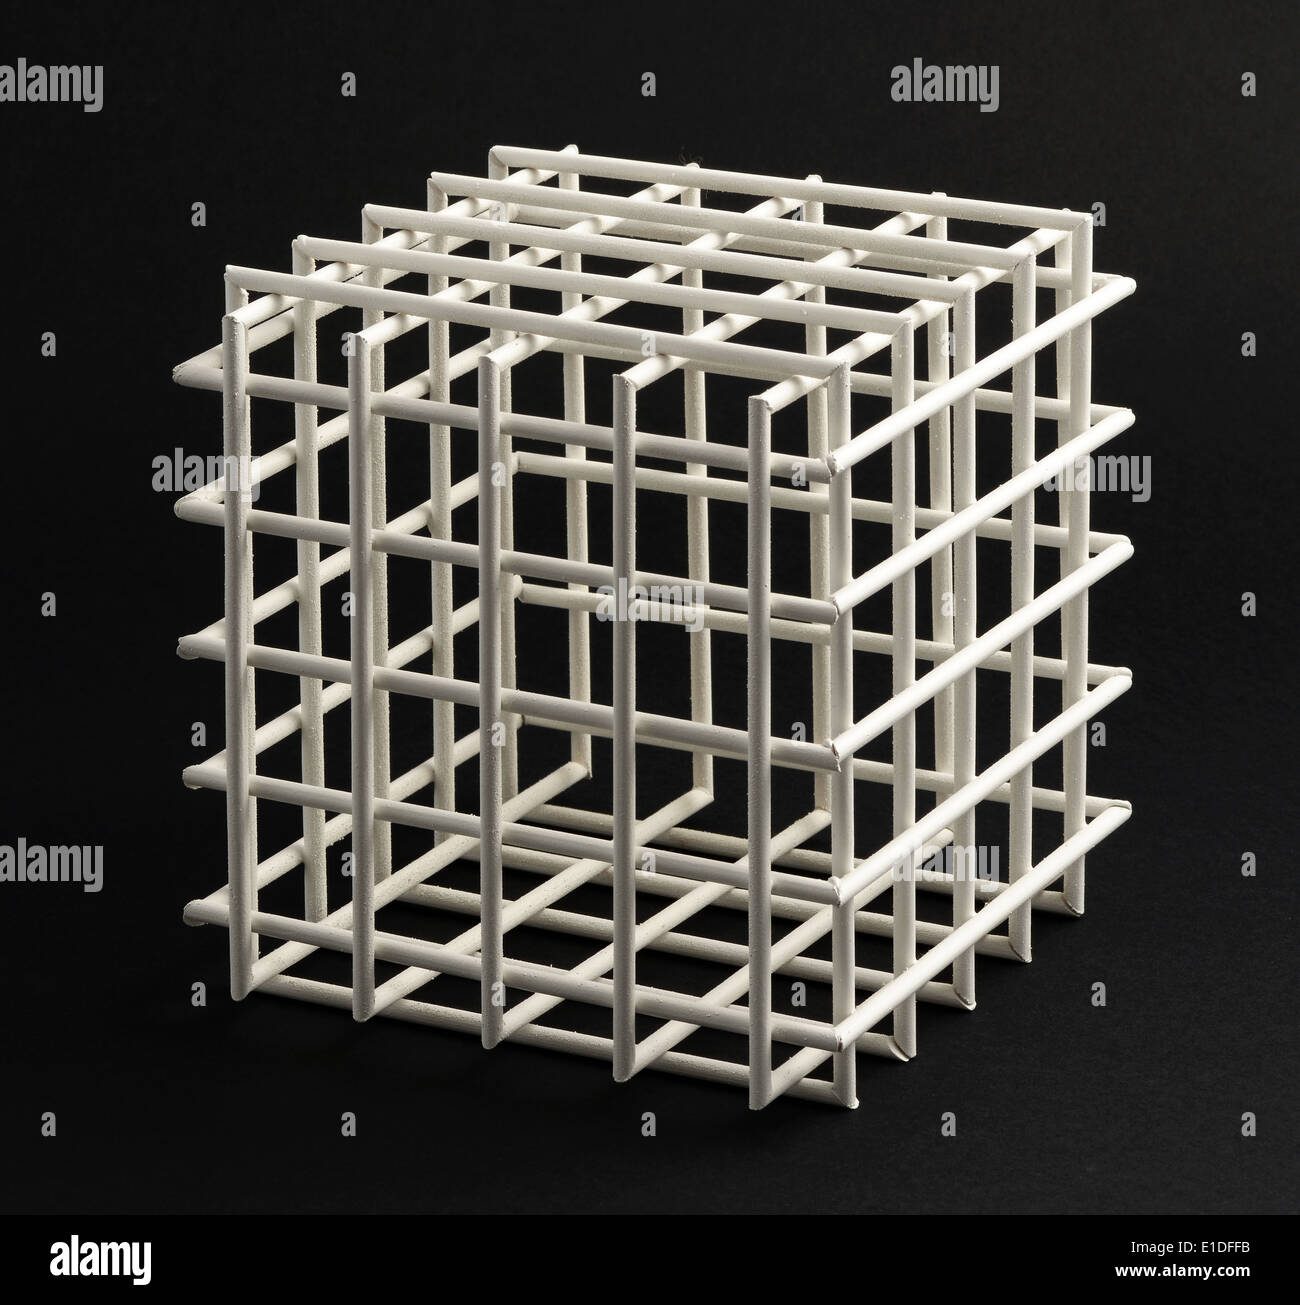 Treillis vide ouvert avec côtés équilatéraux cubes dans une typique forme cube géométrique sur fond noir dans le format carré Banque D'Images